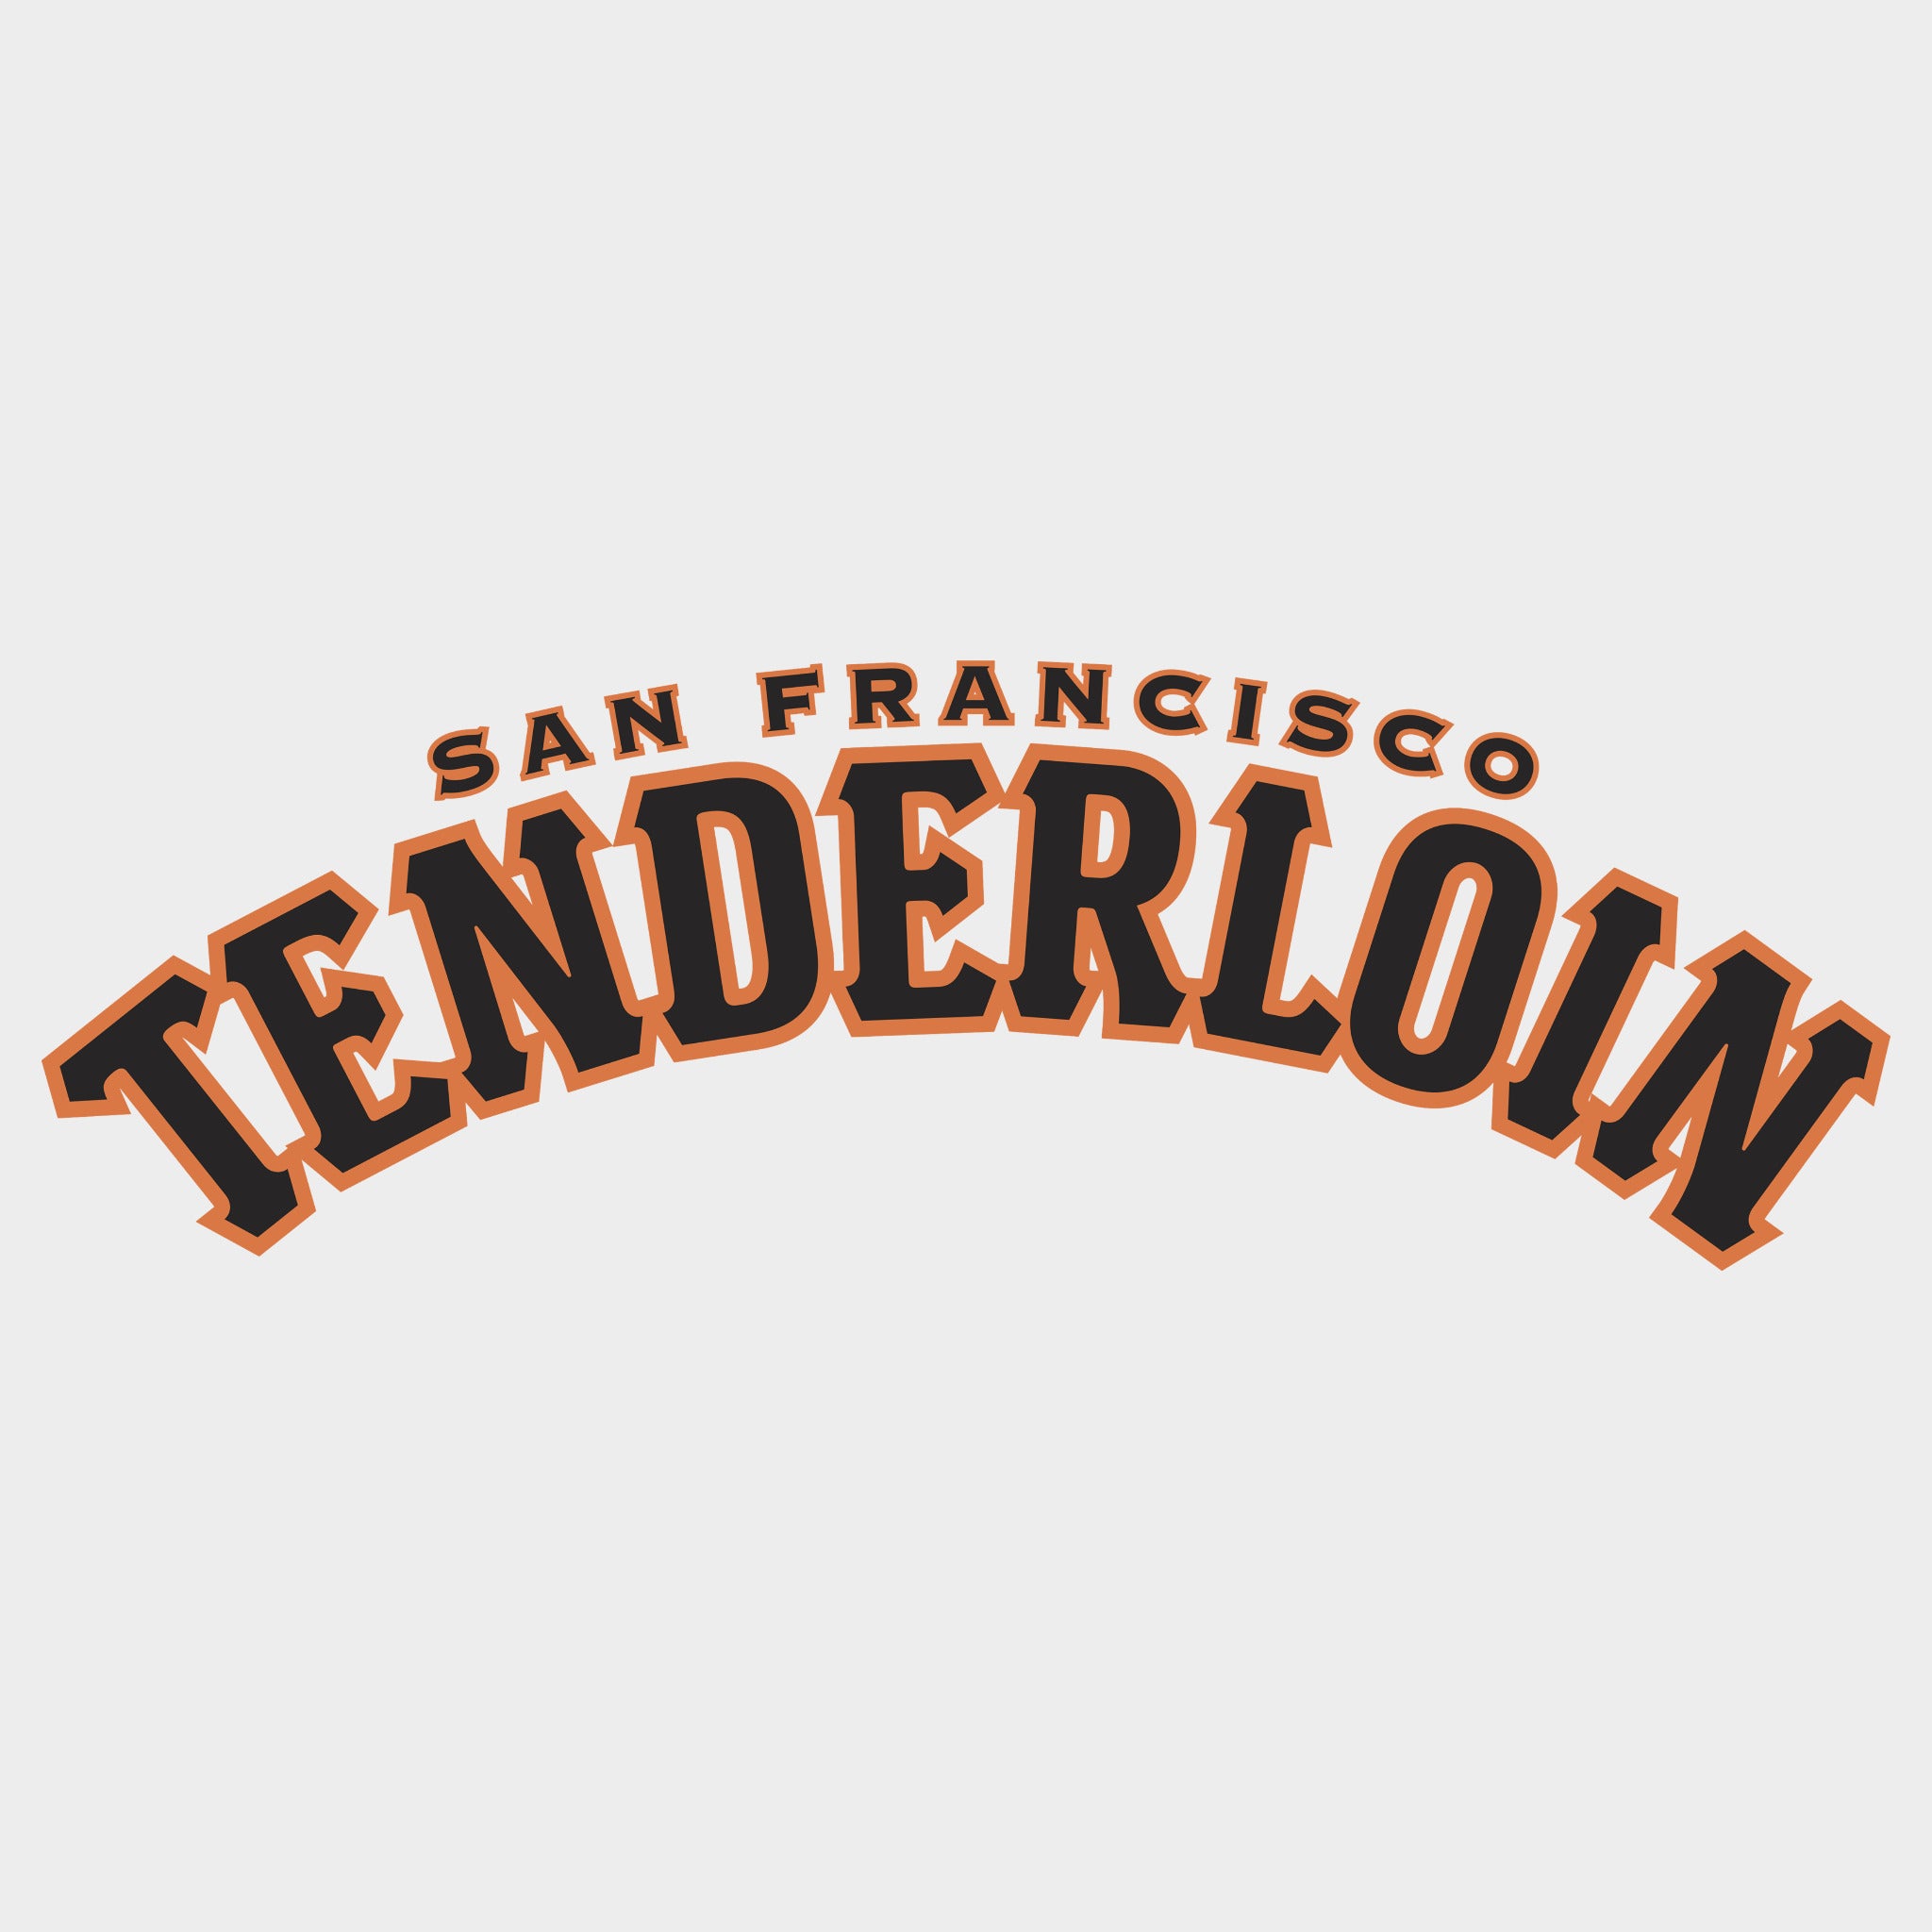 TENDERLOIN DISTRICT MEN'S SWEATSHIRT